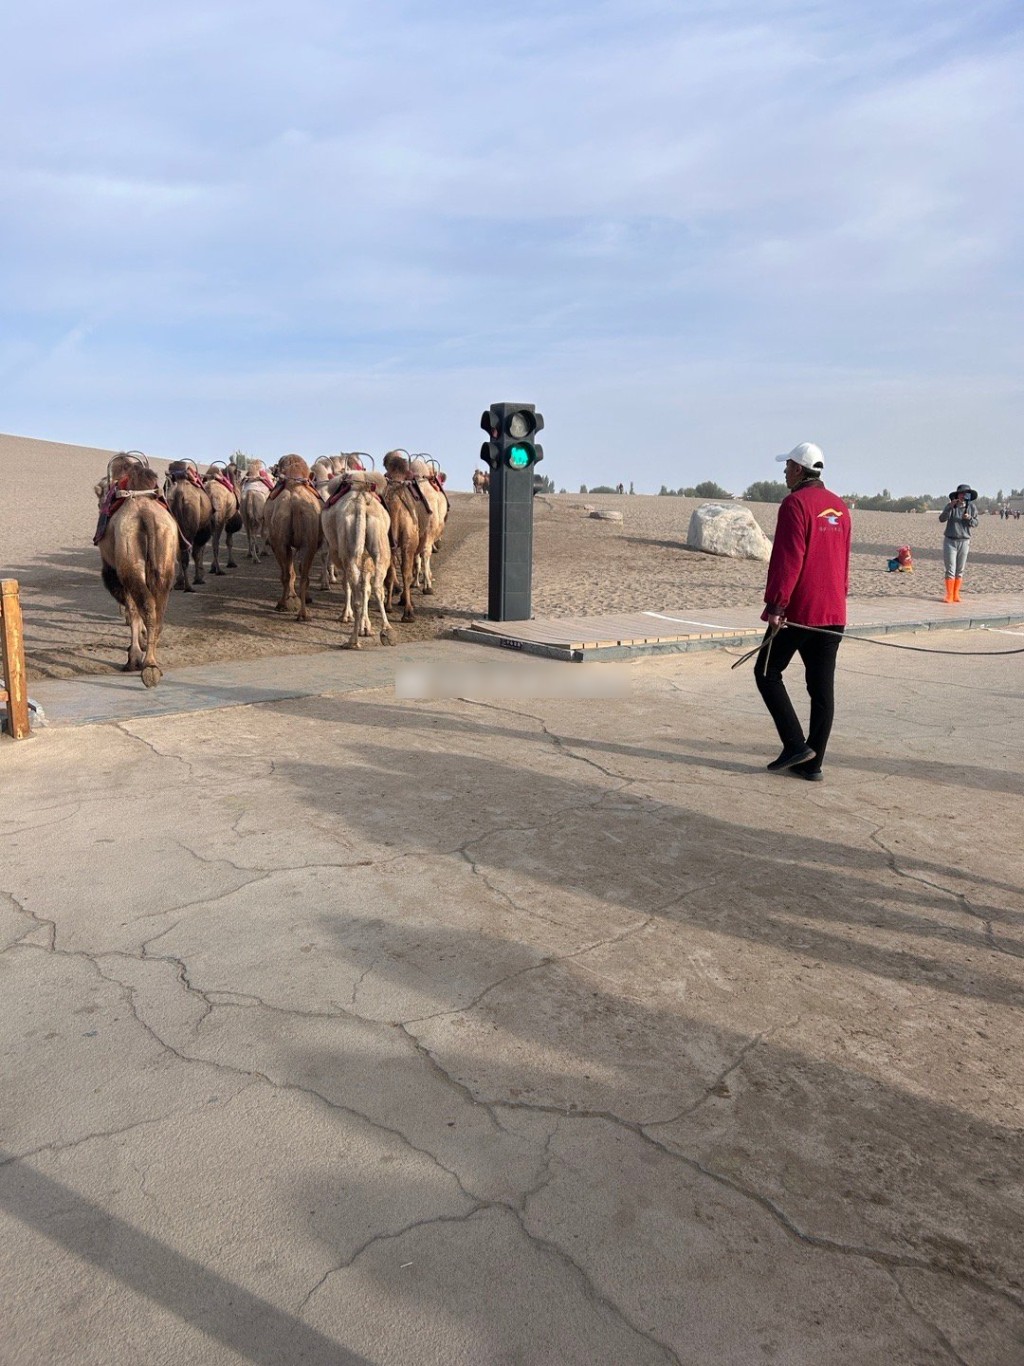 敦煌特设骆驼交通灯，保障景点畅通。微博